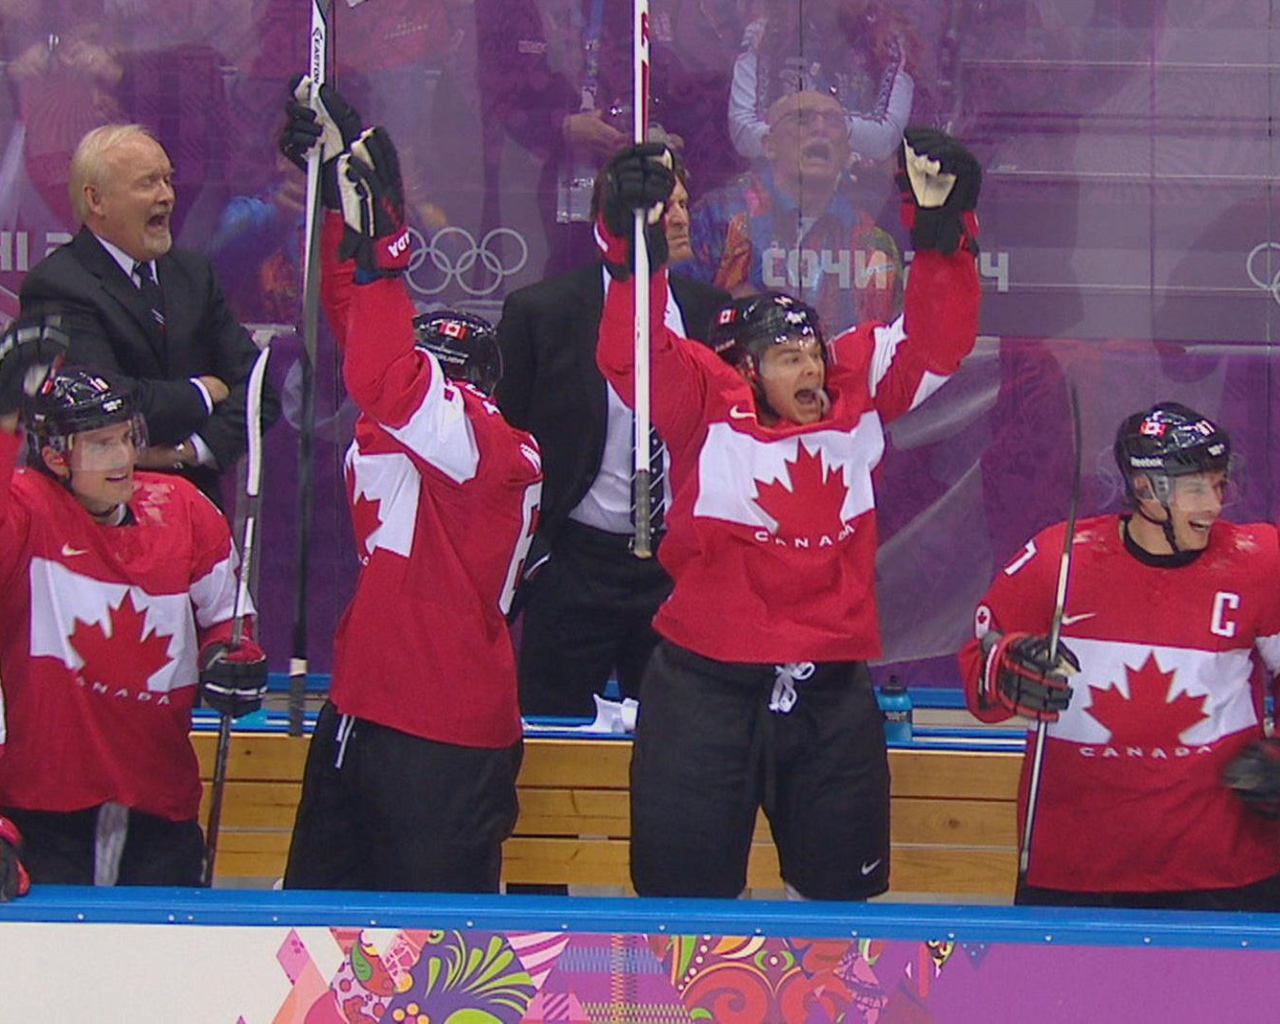 Золотая медаль сборная Канады по хоккею на олимпиаде в Сочи 